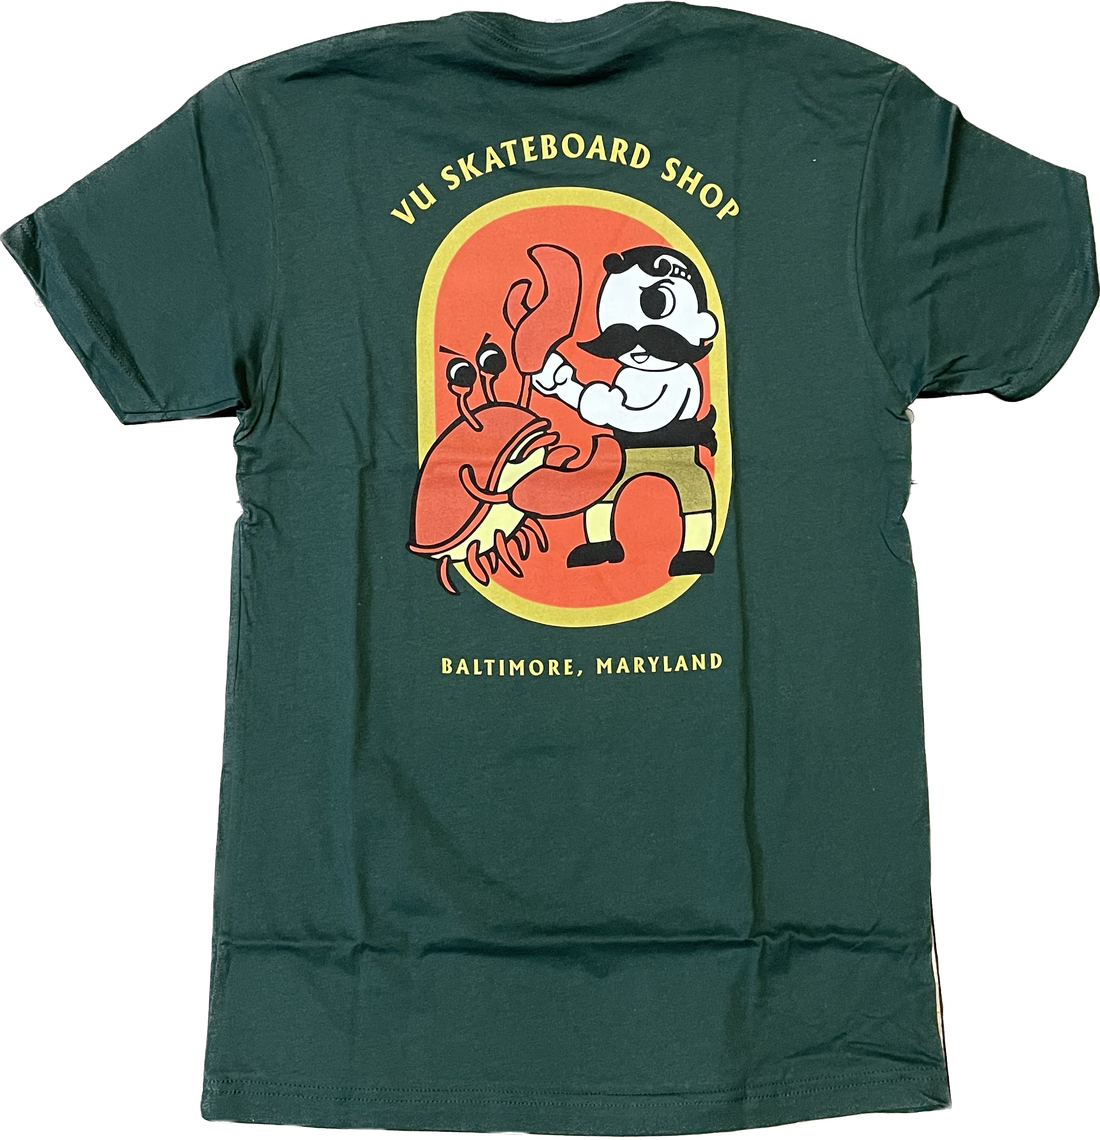 Fighter T-Shirt (Green)